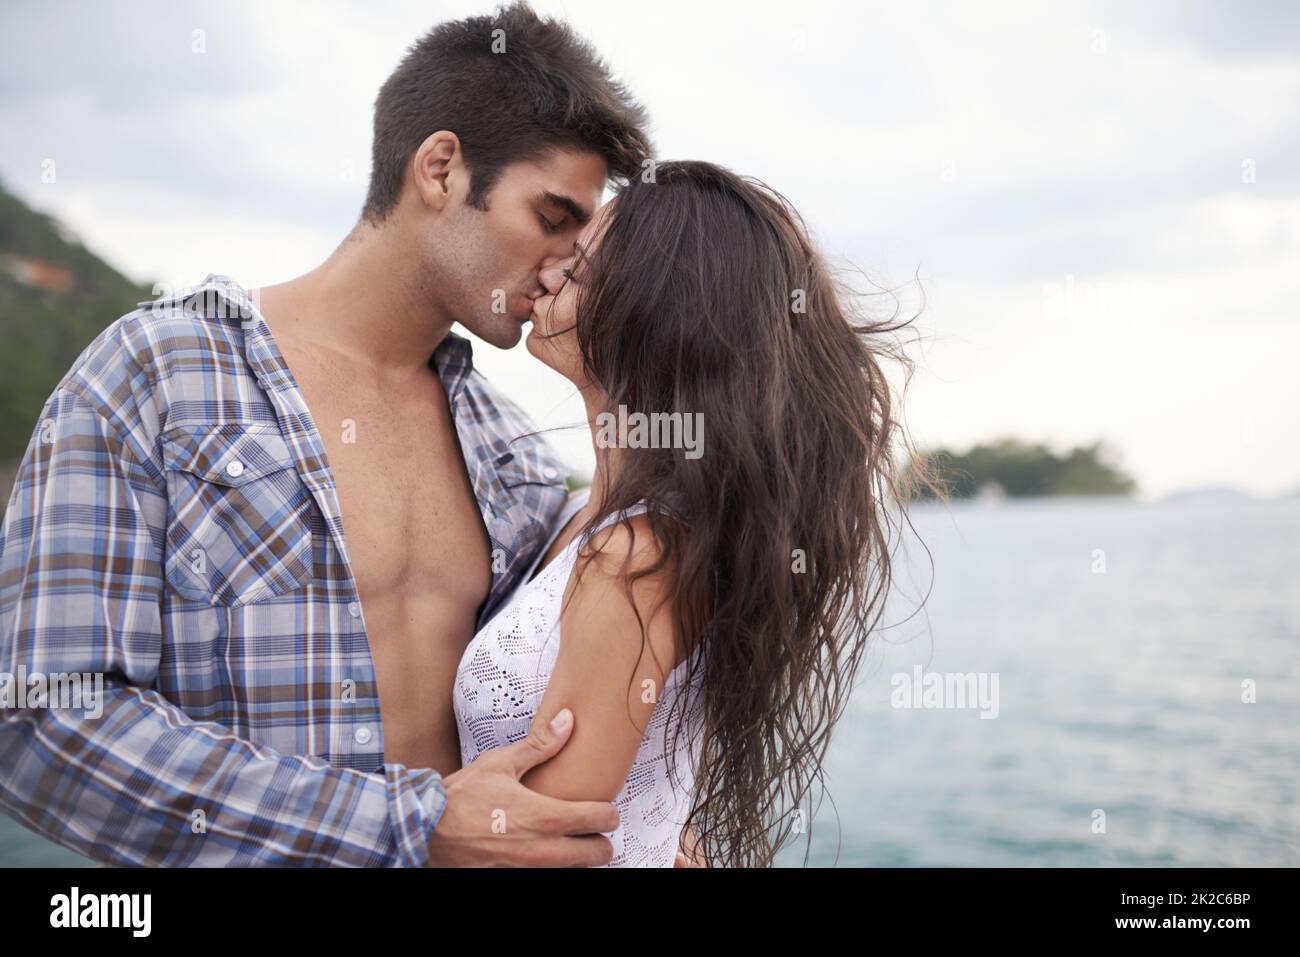 Ihre Liebe nach draußen nehmen. Aufnahme eines intimen jungen Paares, das einen Kuss am Wasser genießt. Stockfoto